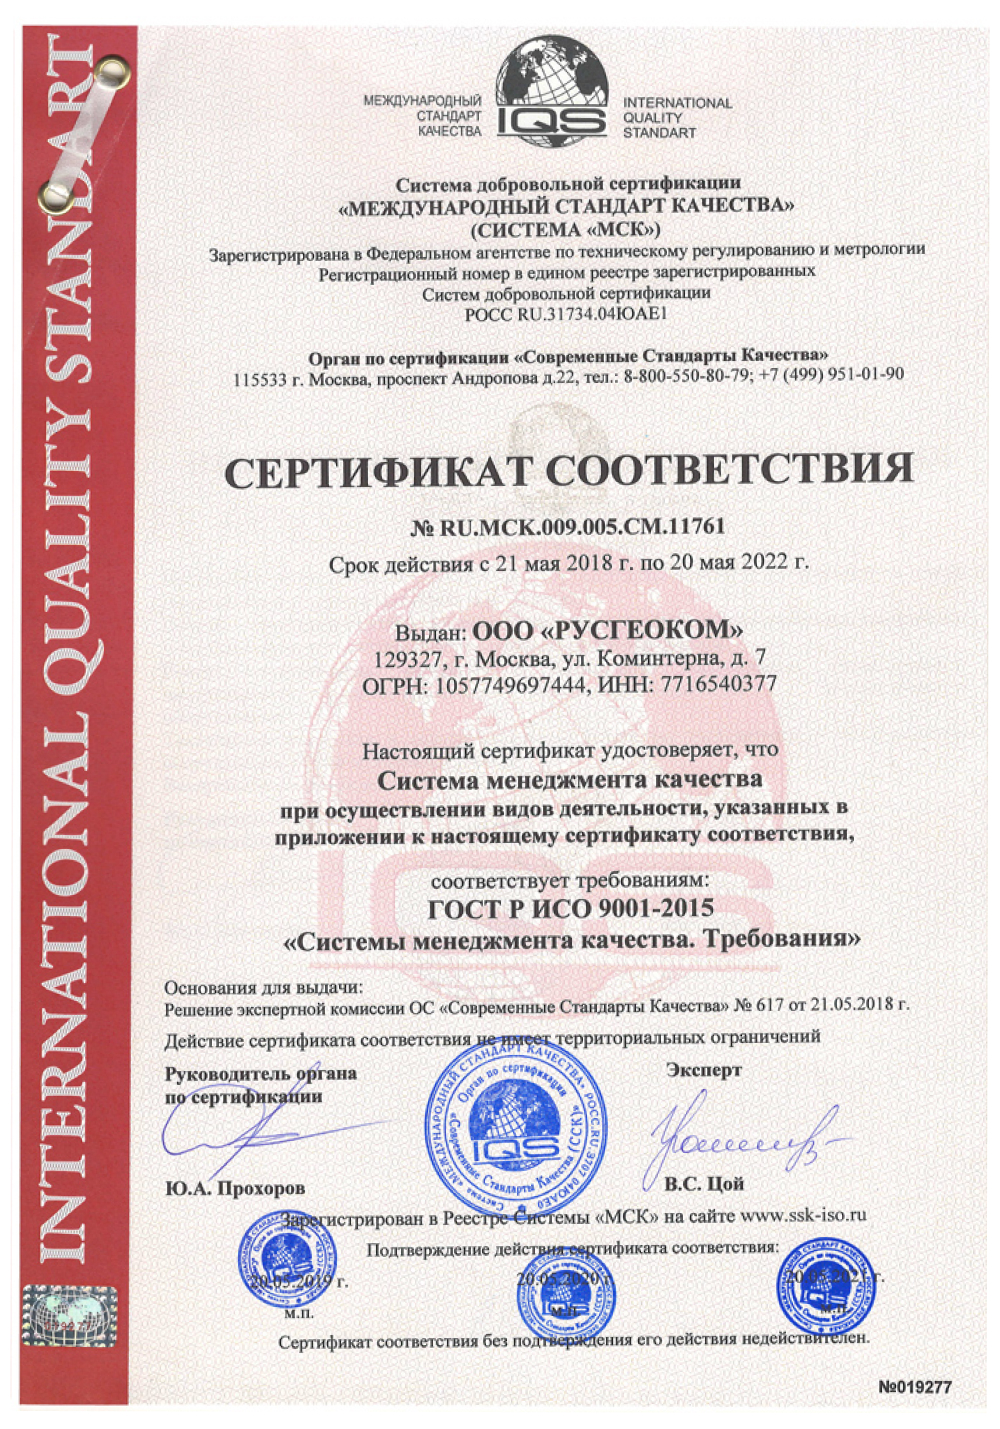 Сертификат соответсвия МСК